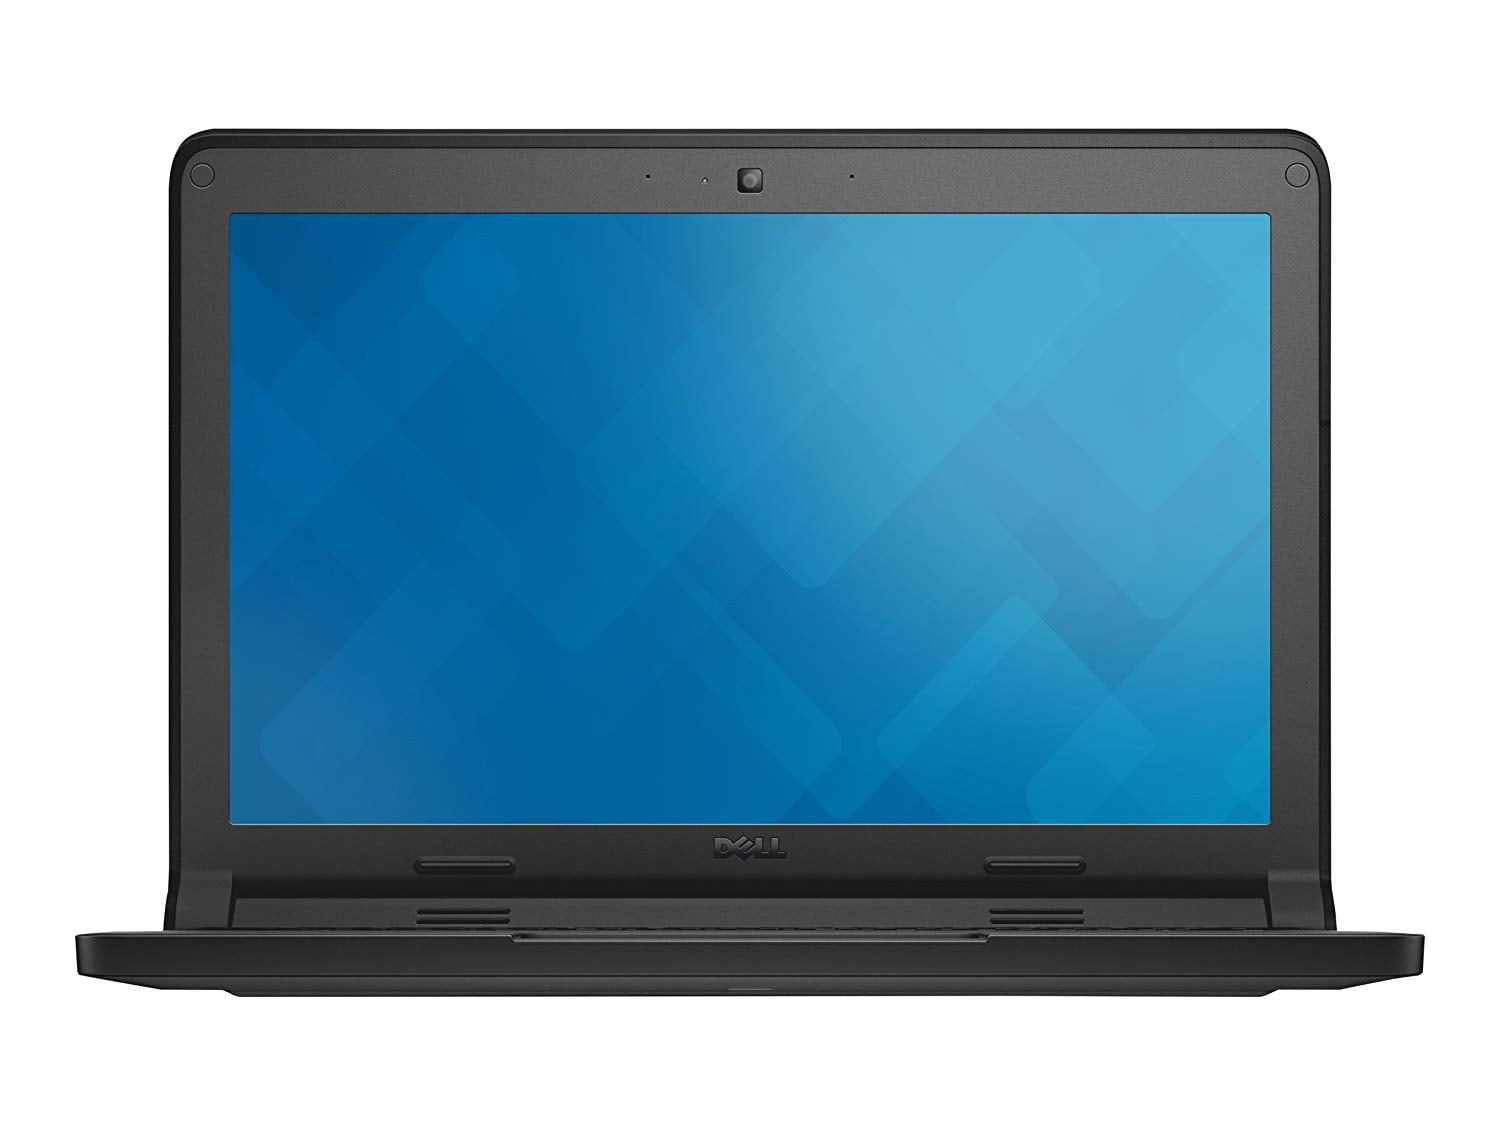 Dell Chromebook 11 3120 Intel Celeron 2.16 GHz 4GB Ram 16GB Chrome OS - Refurbished